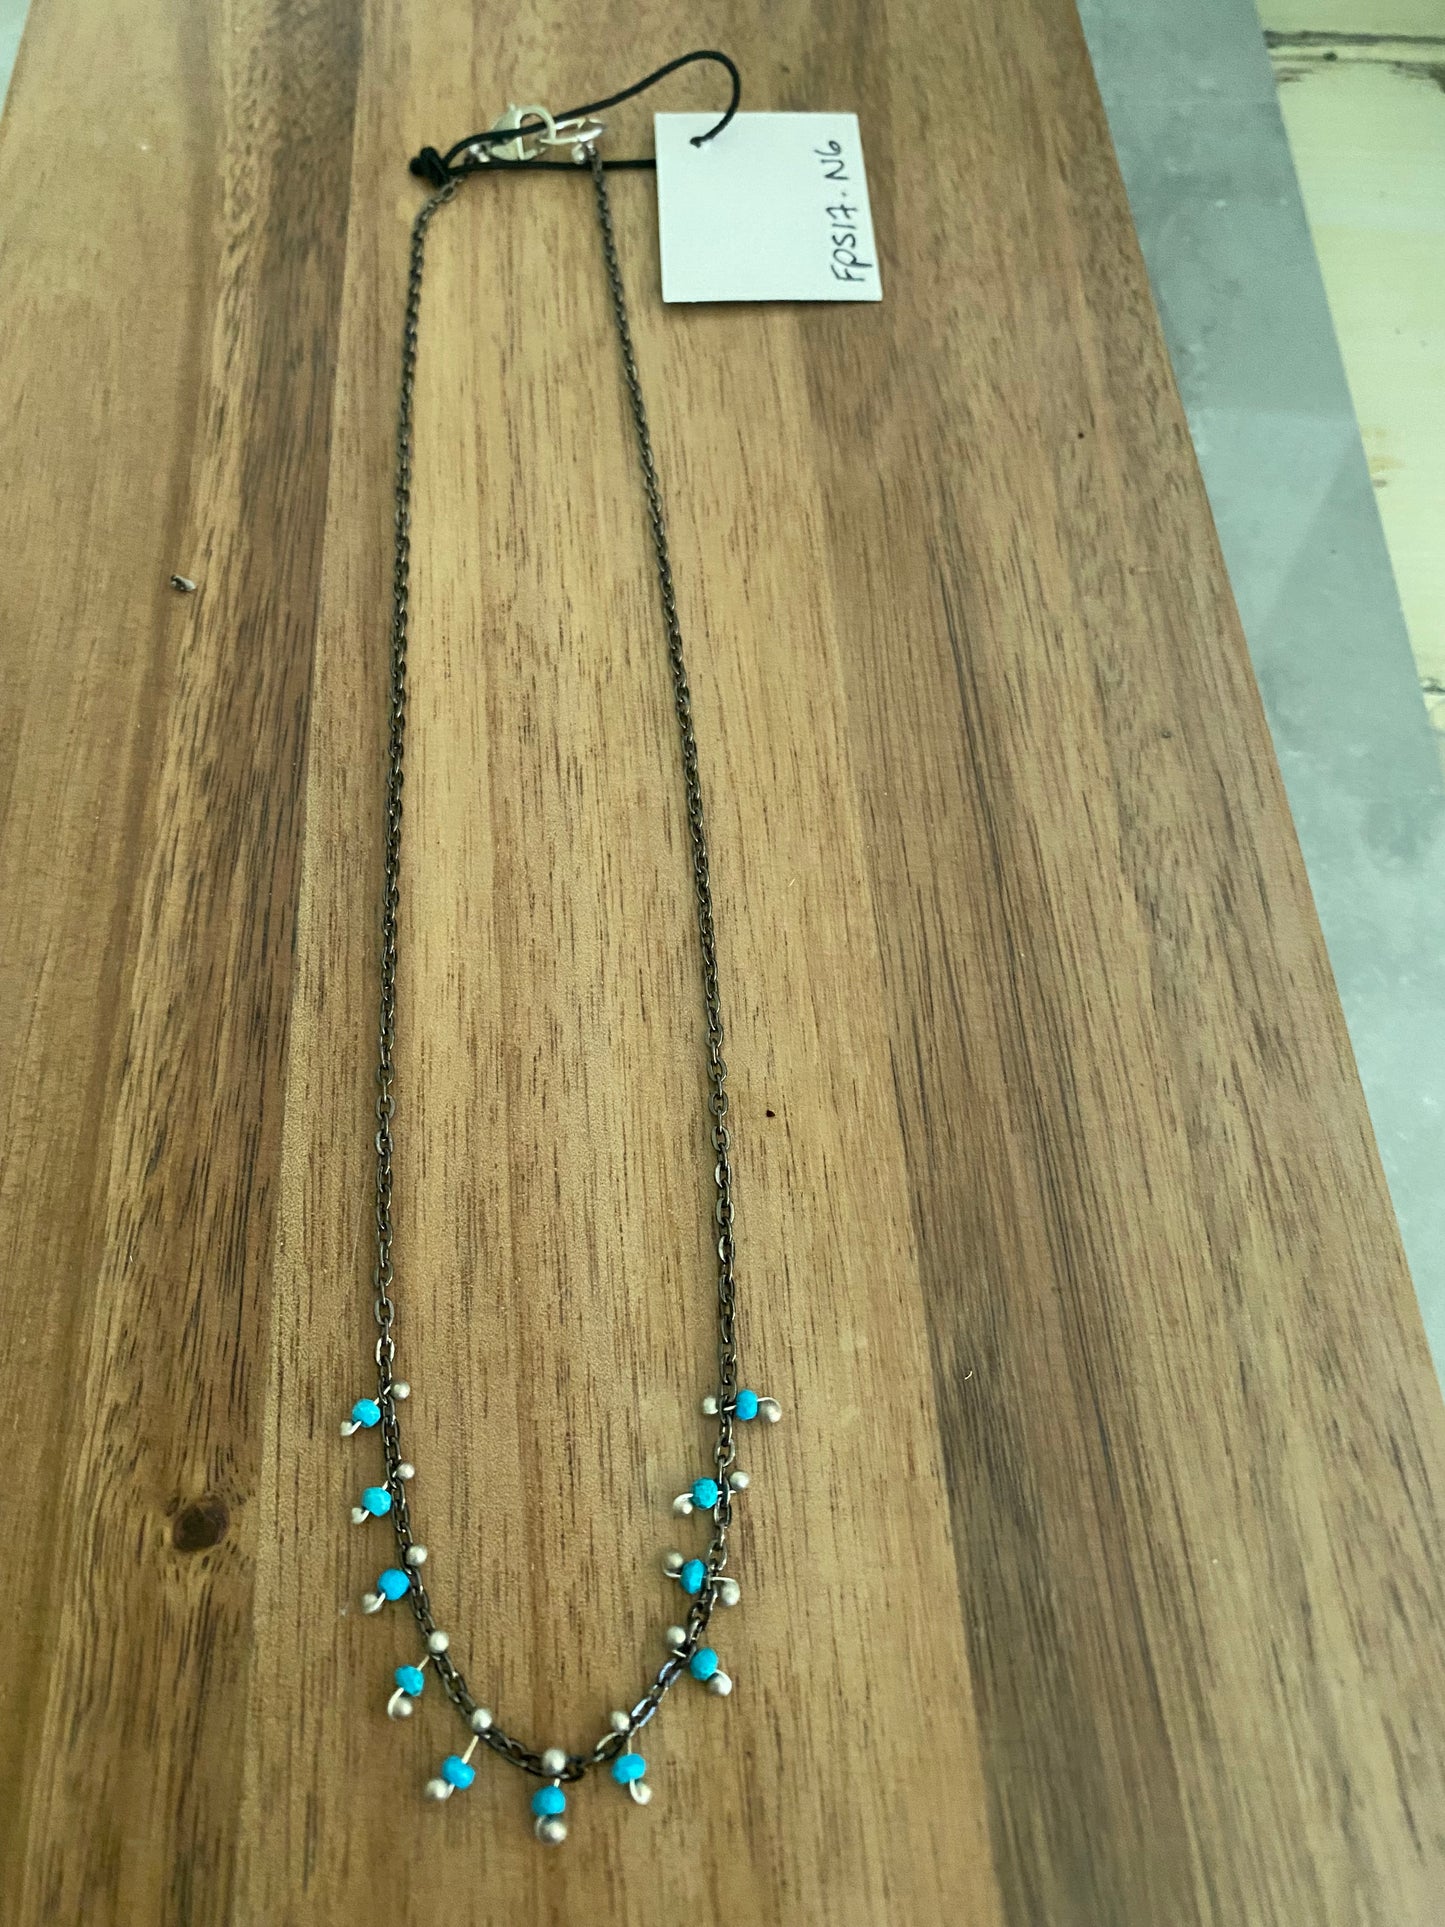 Turquoise Fringe Necklace - Multiple Gemstone Options Available